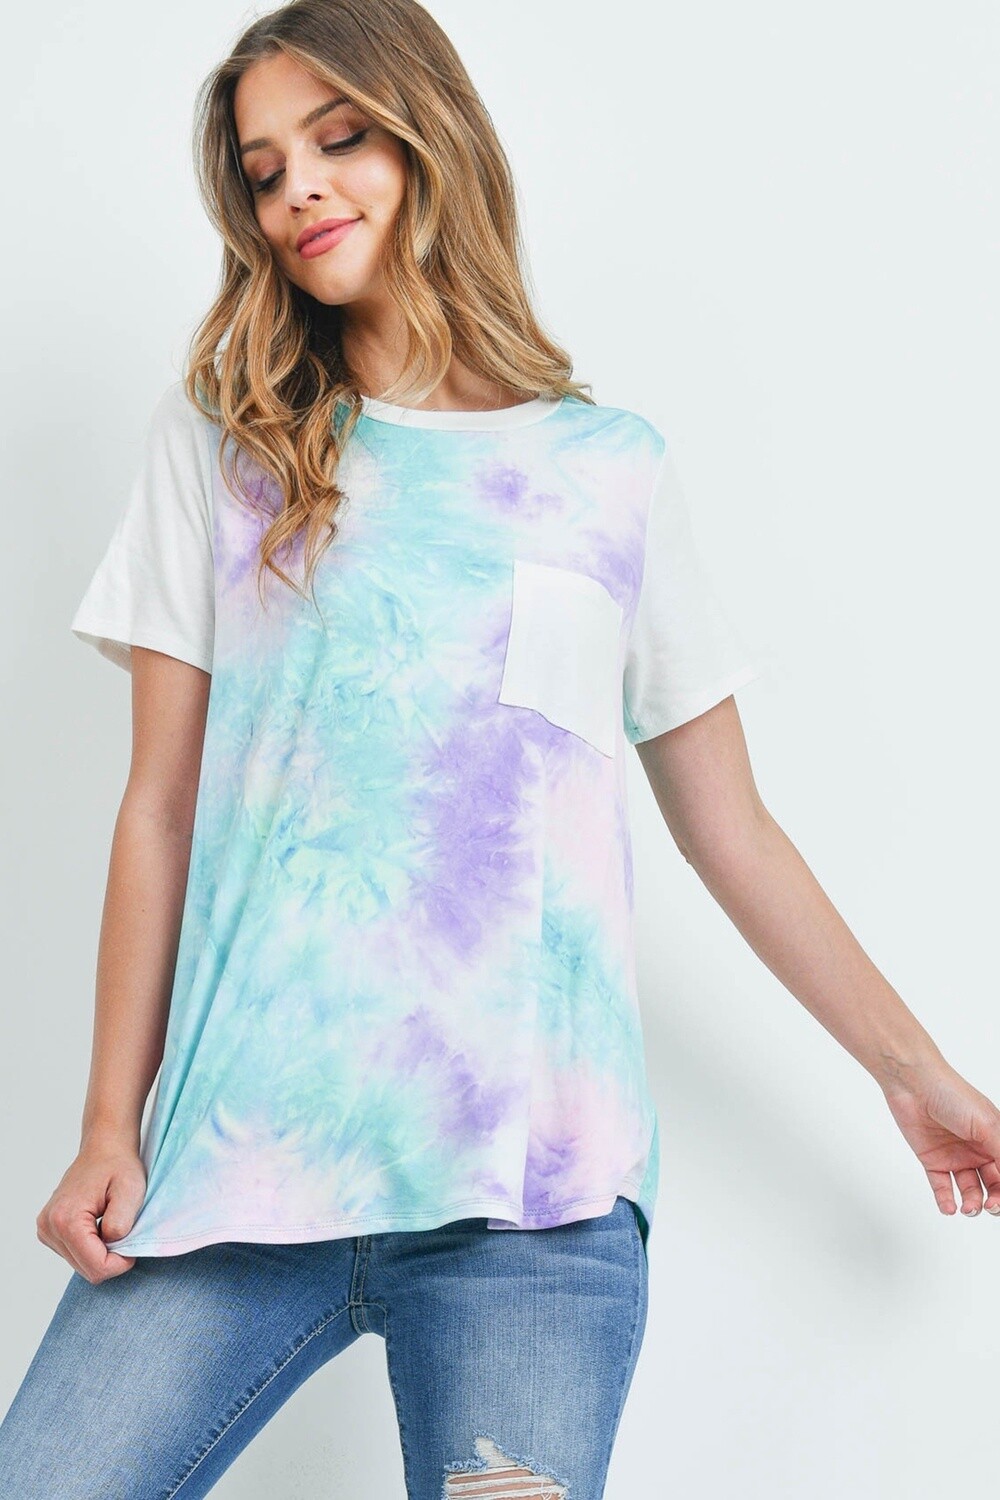 Constant Joy Tie-Dye Shift T-Shirt, Size: S, Color: Pink/Mint/Lilac